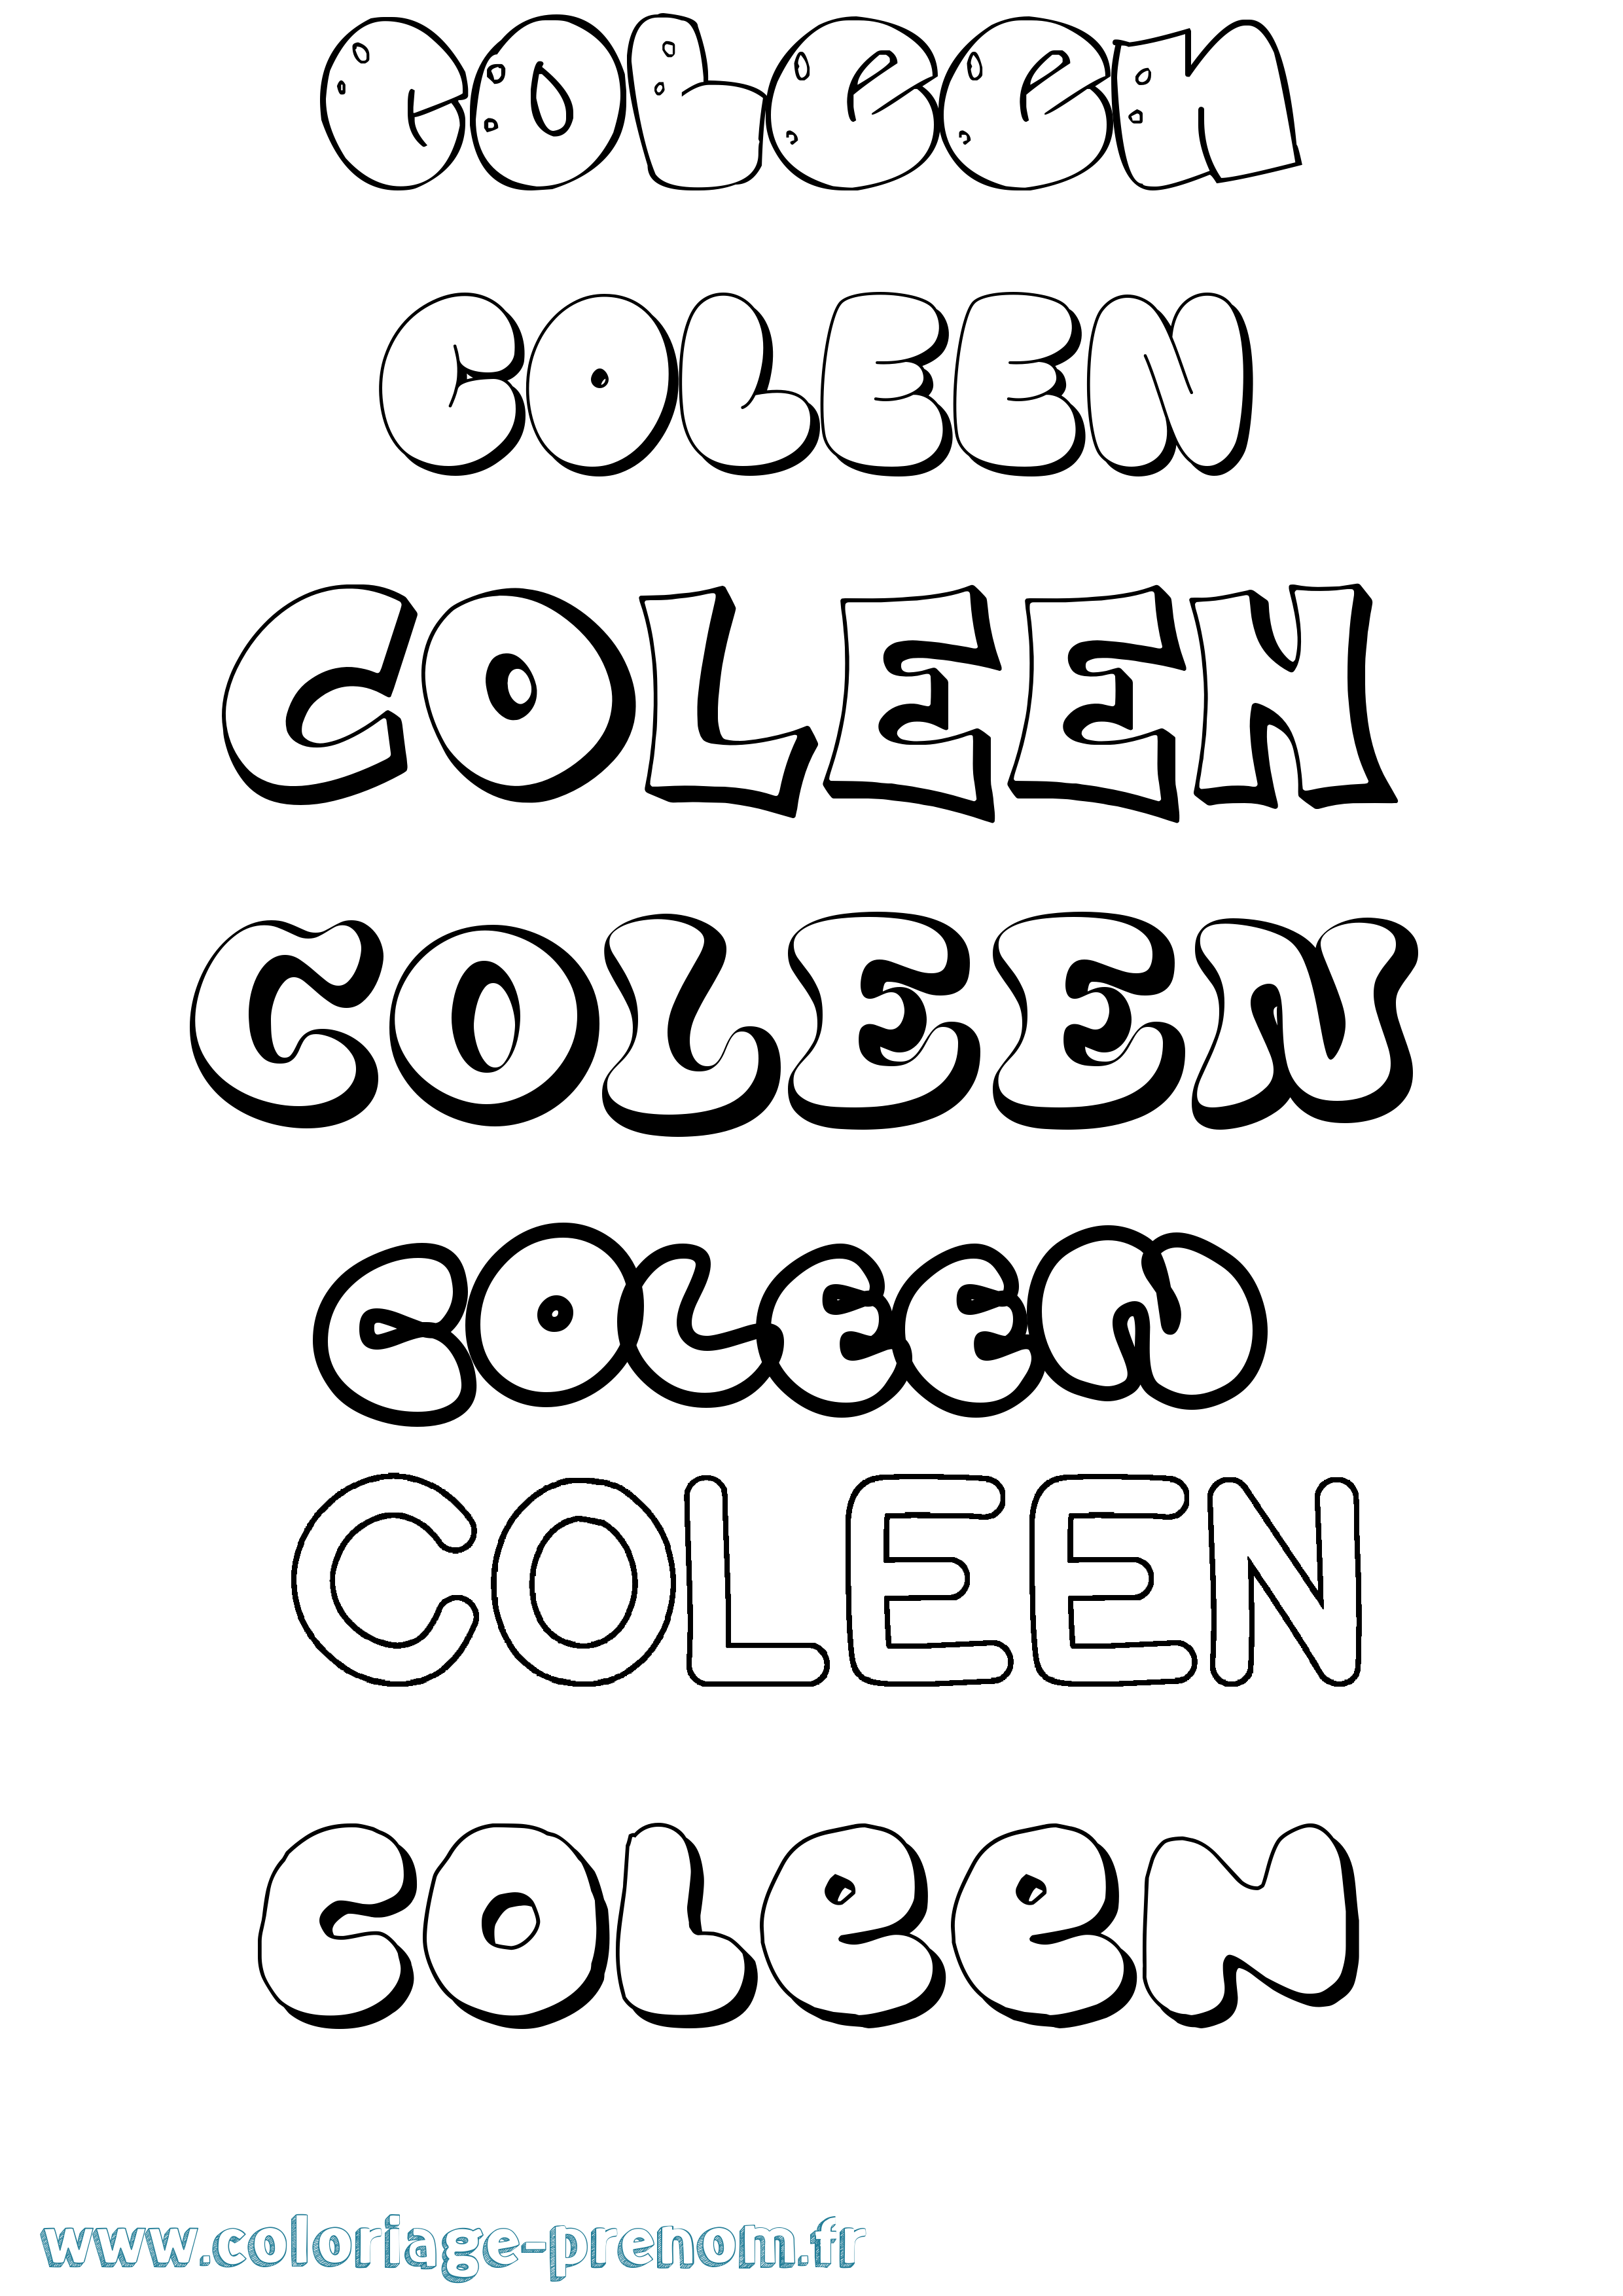 Coloriage prénom Coleen Bubble